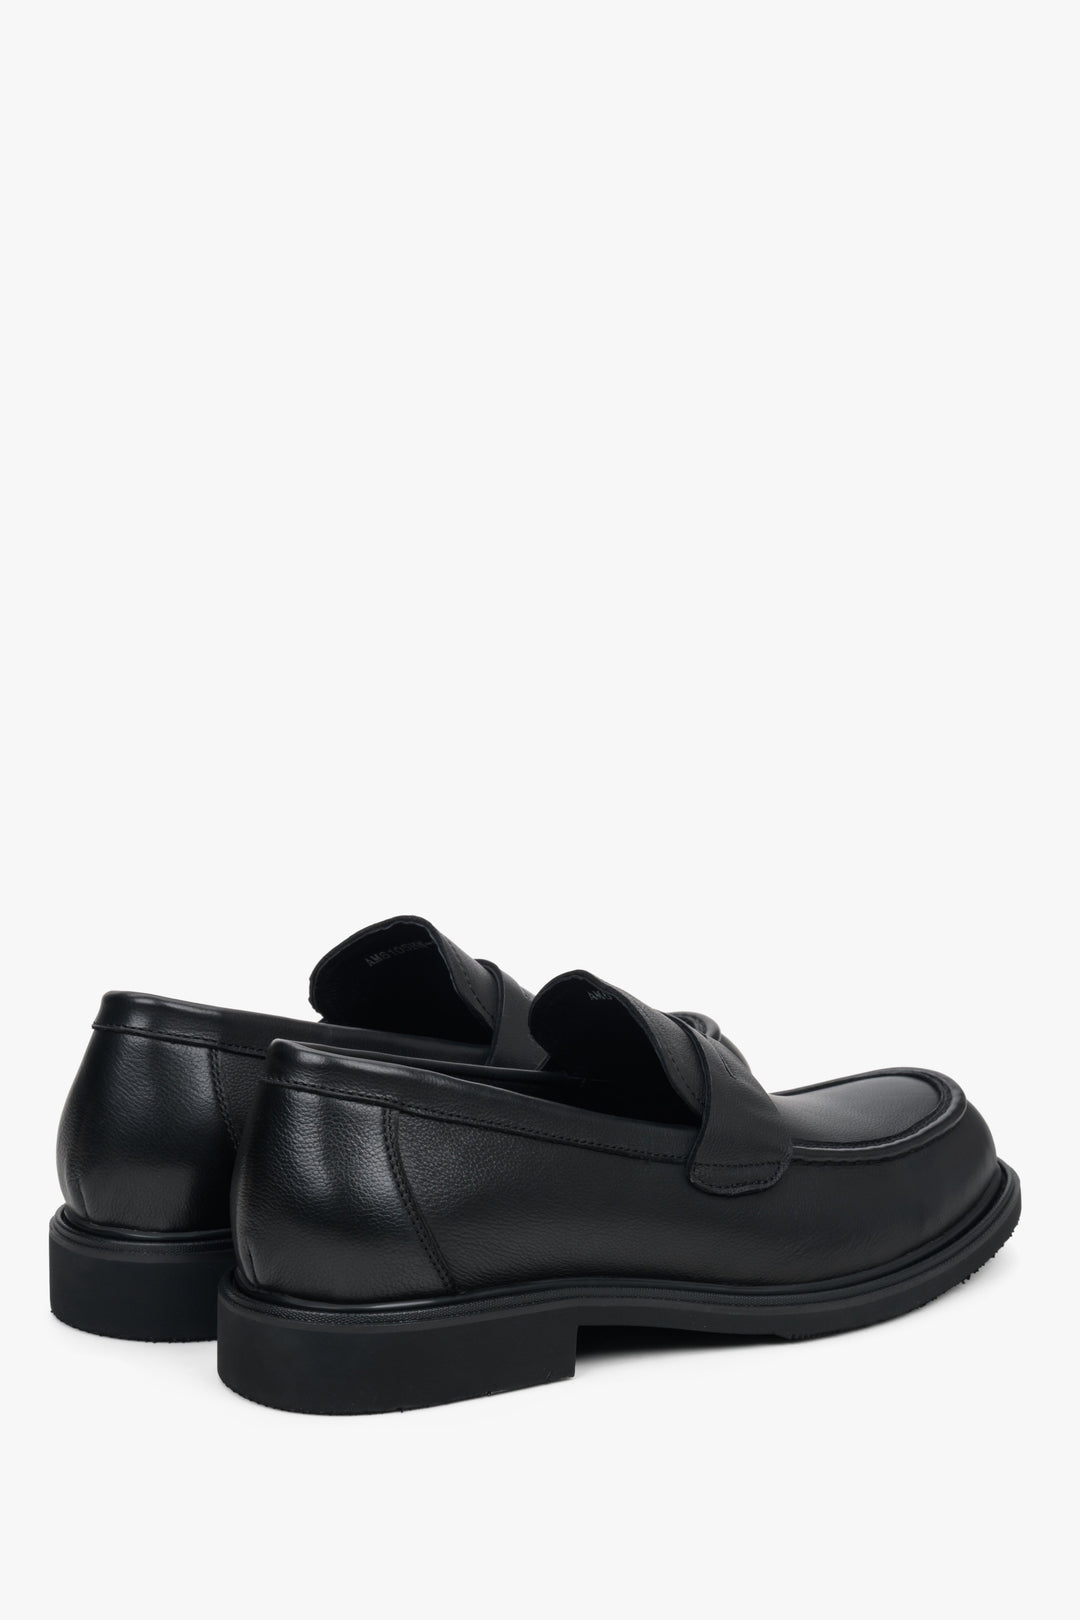 Męskie, skórzane mokasyny w kolorze czarnym Estro - zbliżenie na zapiętek i linię boczną buta.